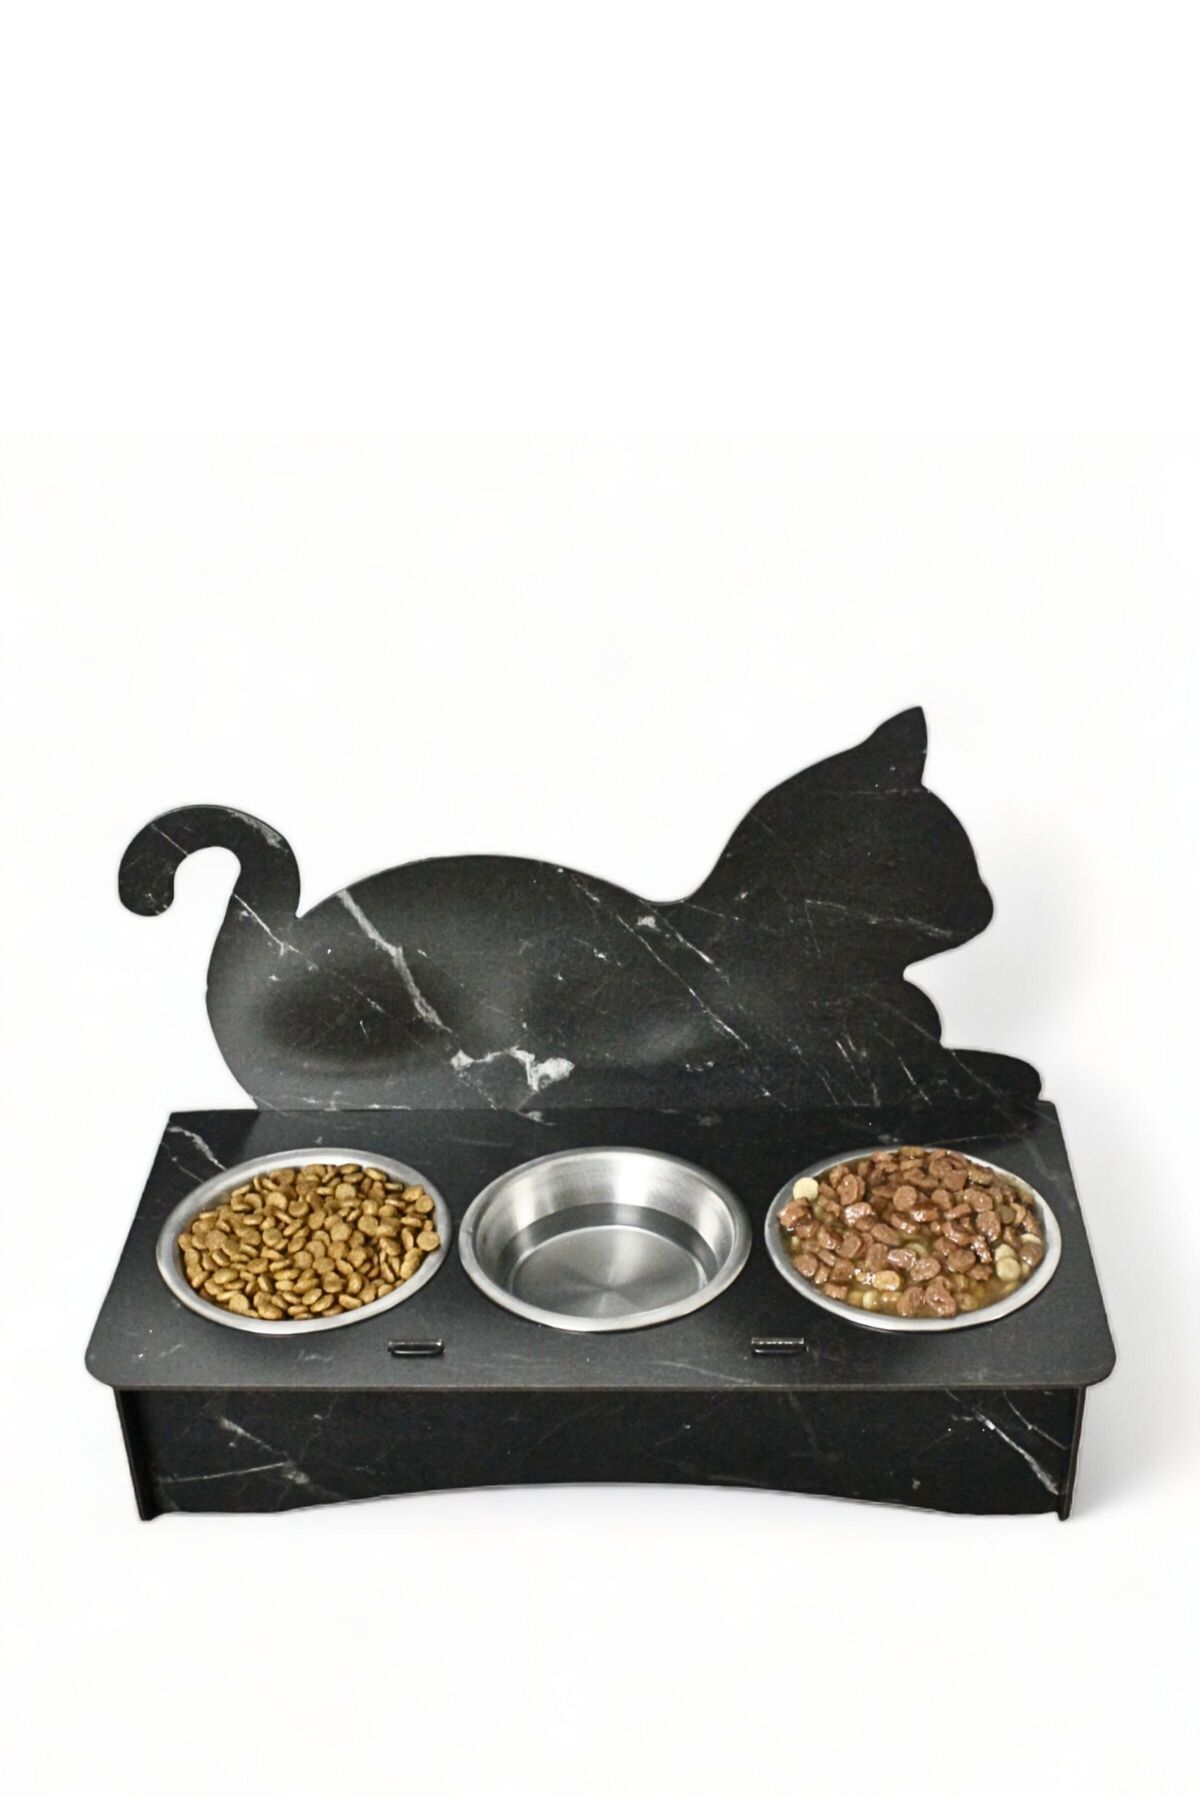 Evene Kedi Mama Kabı Kedi Su Kabı Kedi Mama ve Su Kabı Kedi Yemek Kabı 3 Çelik Kase Model 4 Siyah Mermer